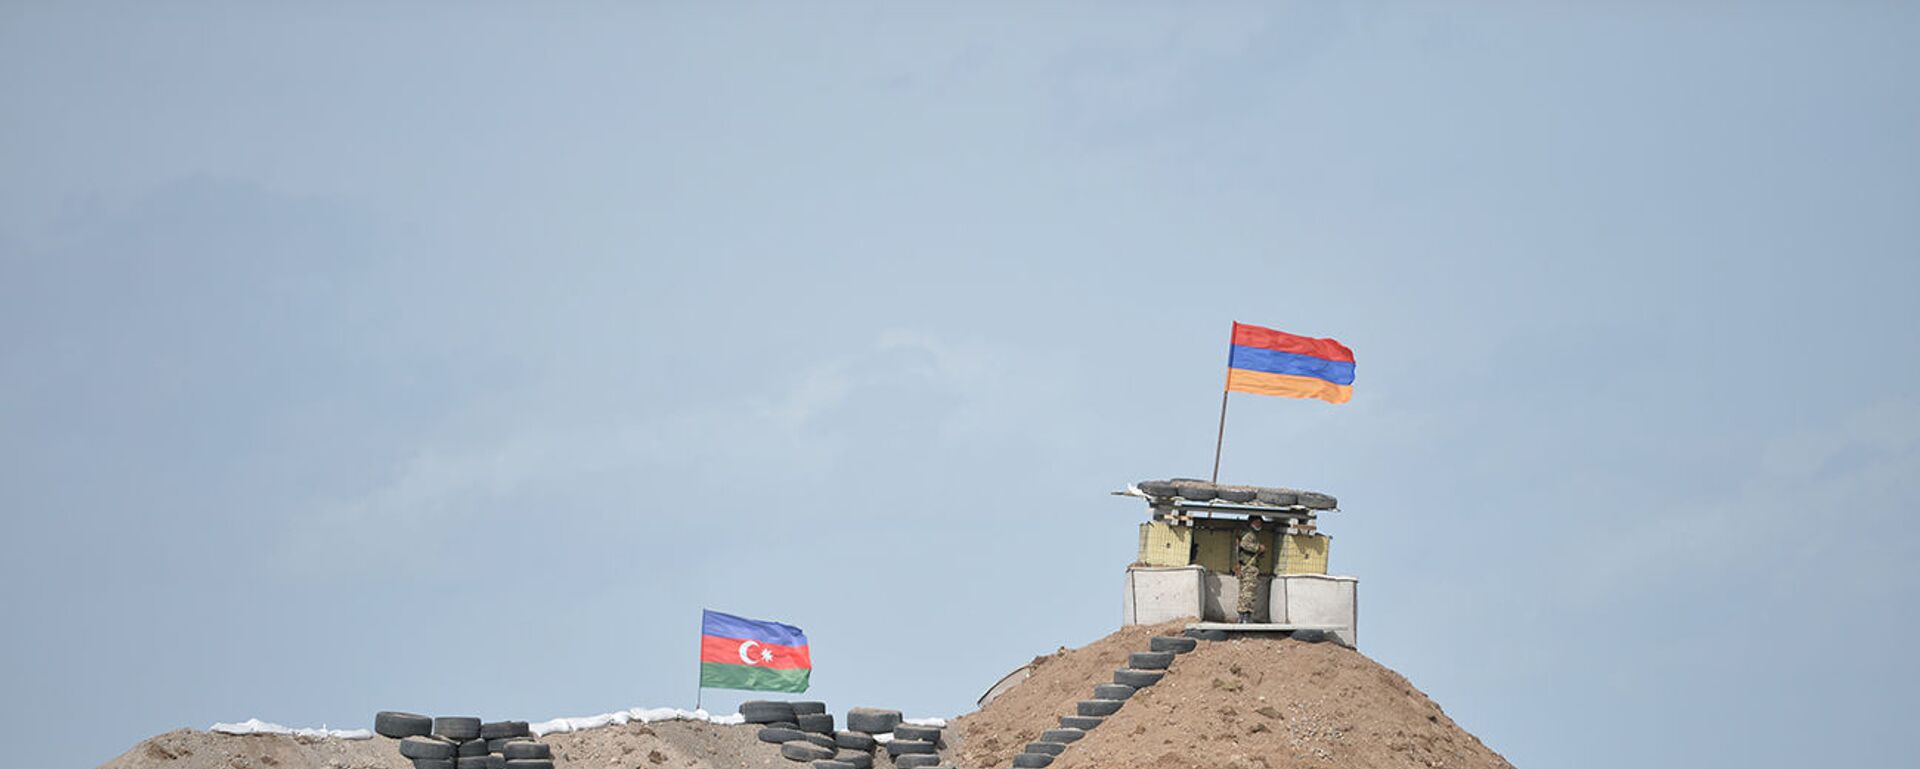 Военные посты на армянсо-азербайджанской границе - Sputnik Արմենիա, 1920, 09.06.2021